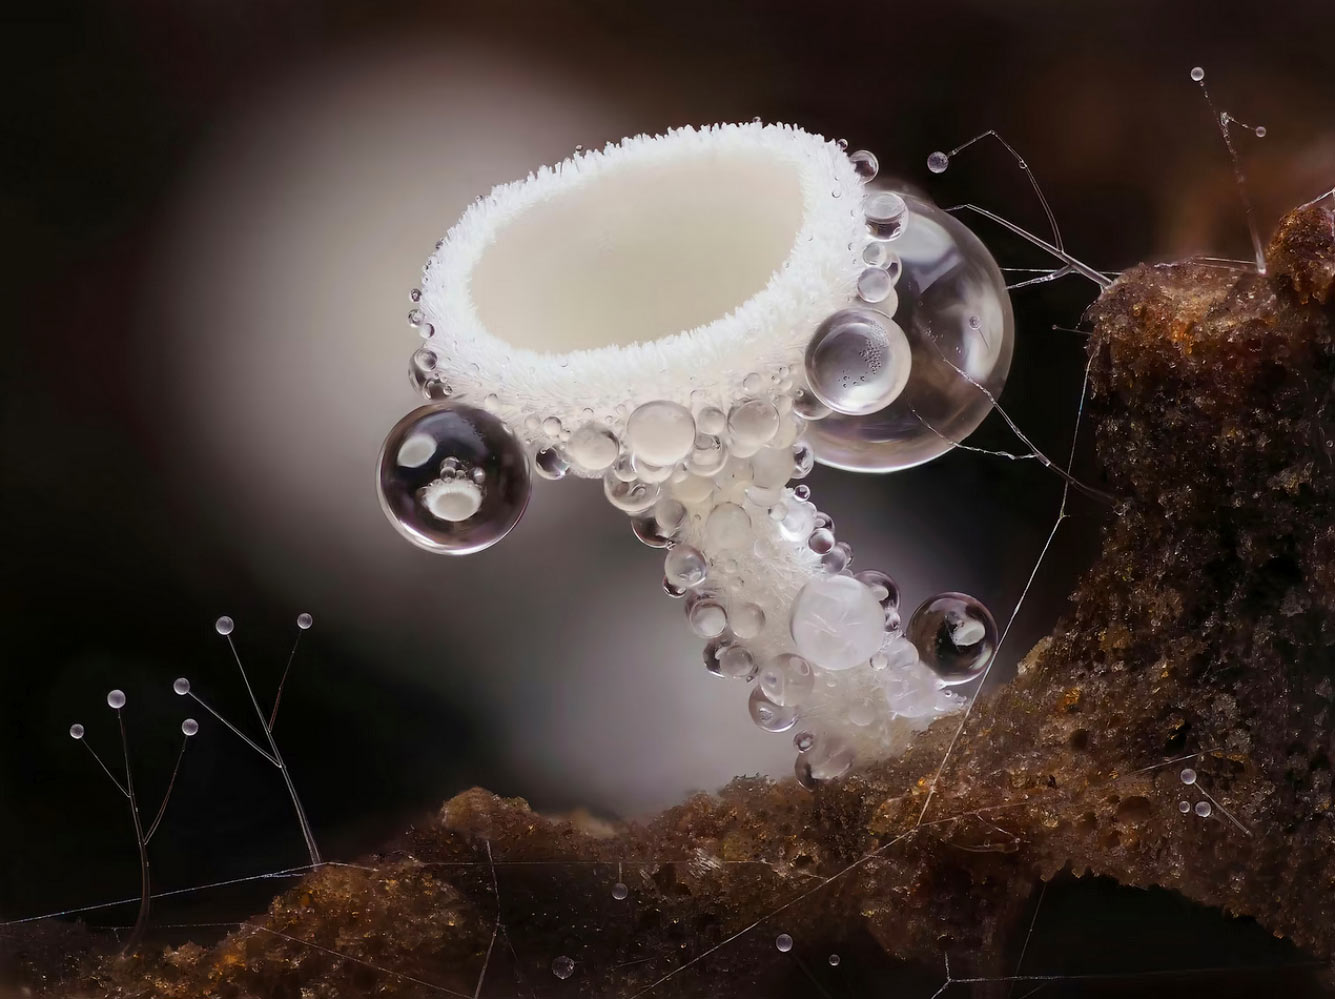 Крошечный чашевидный гриб размером около полумиллиметра высотой